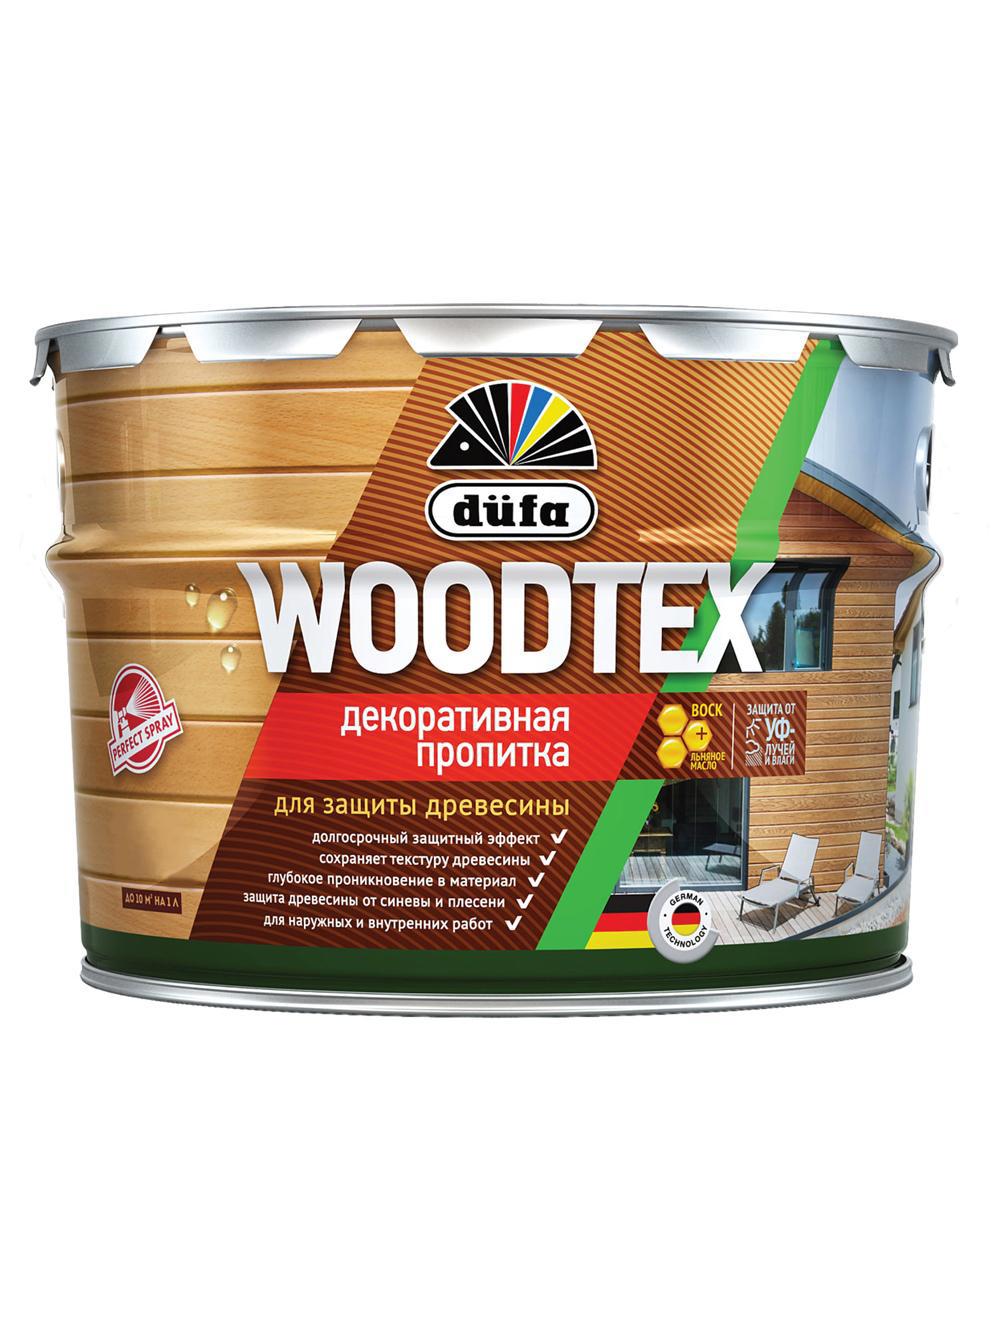 90194569 Пропитка декоративная для защиты древесины алкидная Woodtex дуб 0.9 л STLM-0128500 DUFA